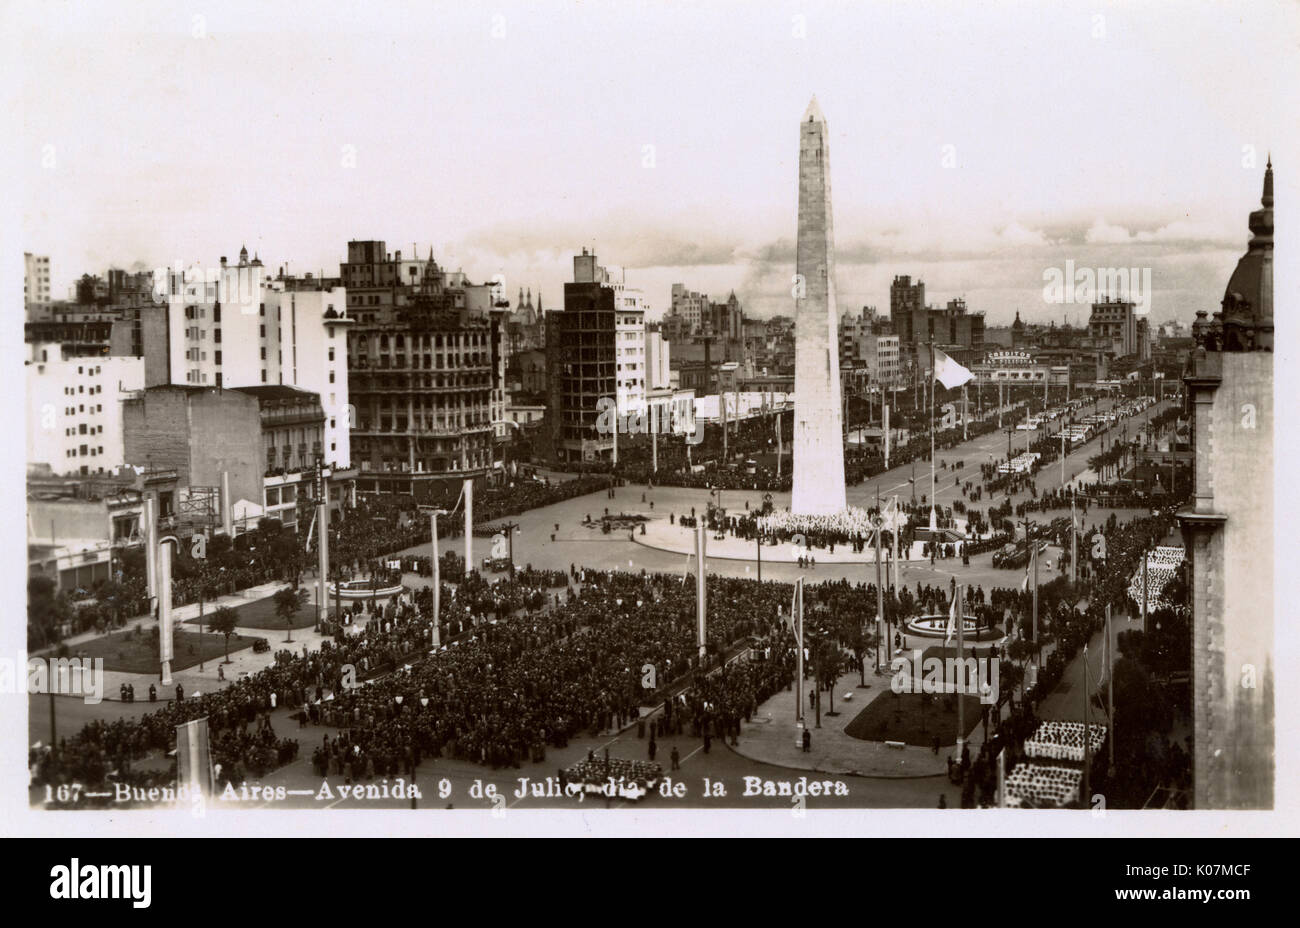 Avenida 9 de Julio - Buenos Aires, Argentina on Flag Day Stock Photo